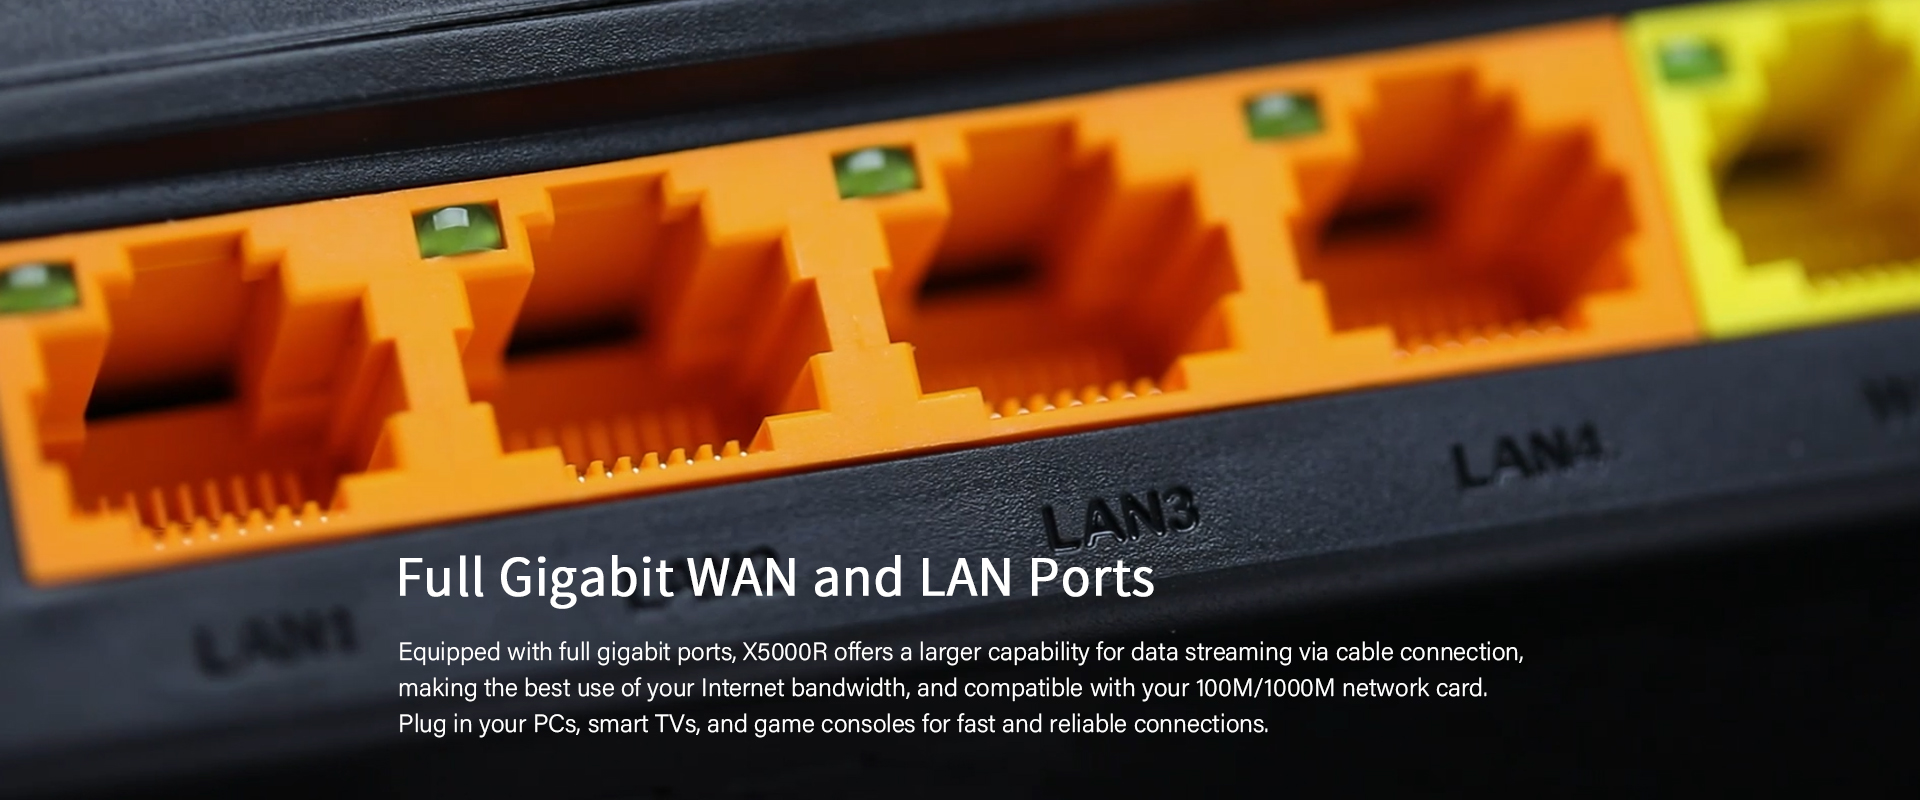 Gigabit WAN/LAN Ports